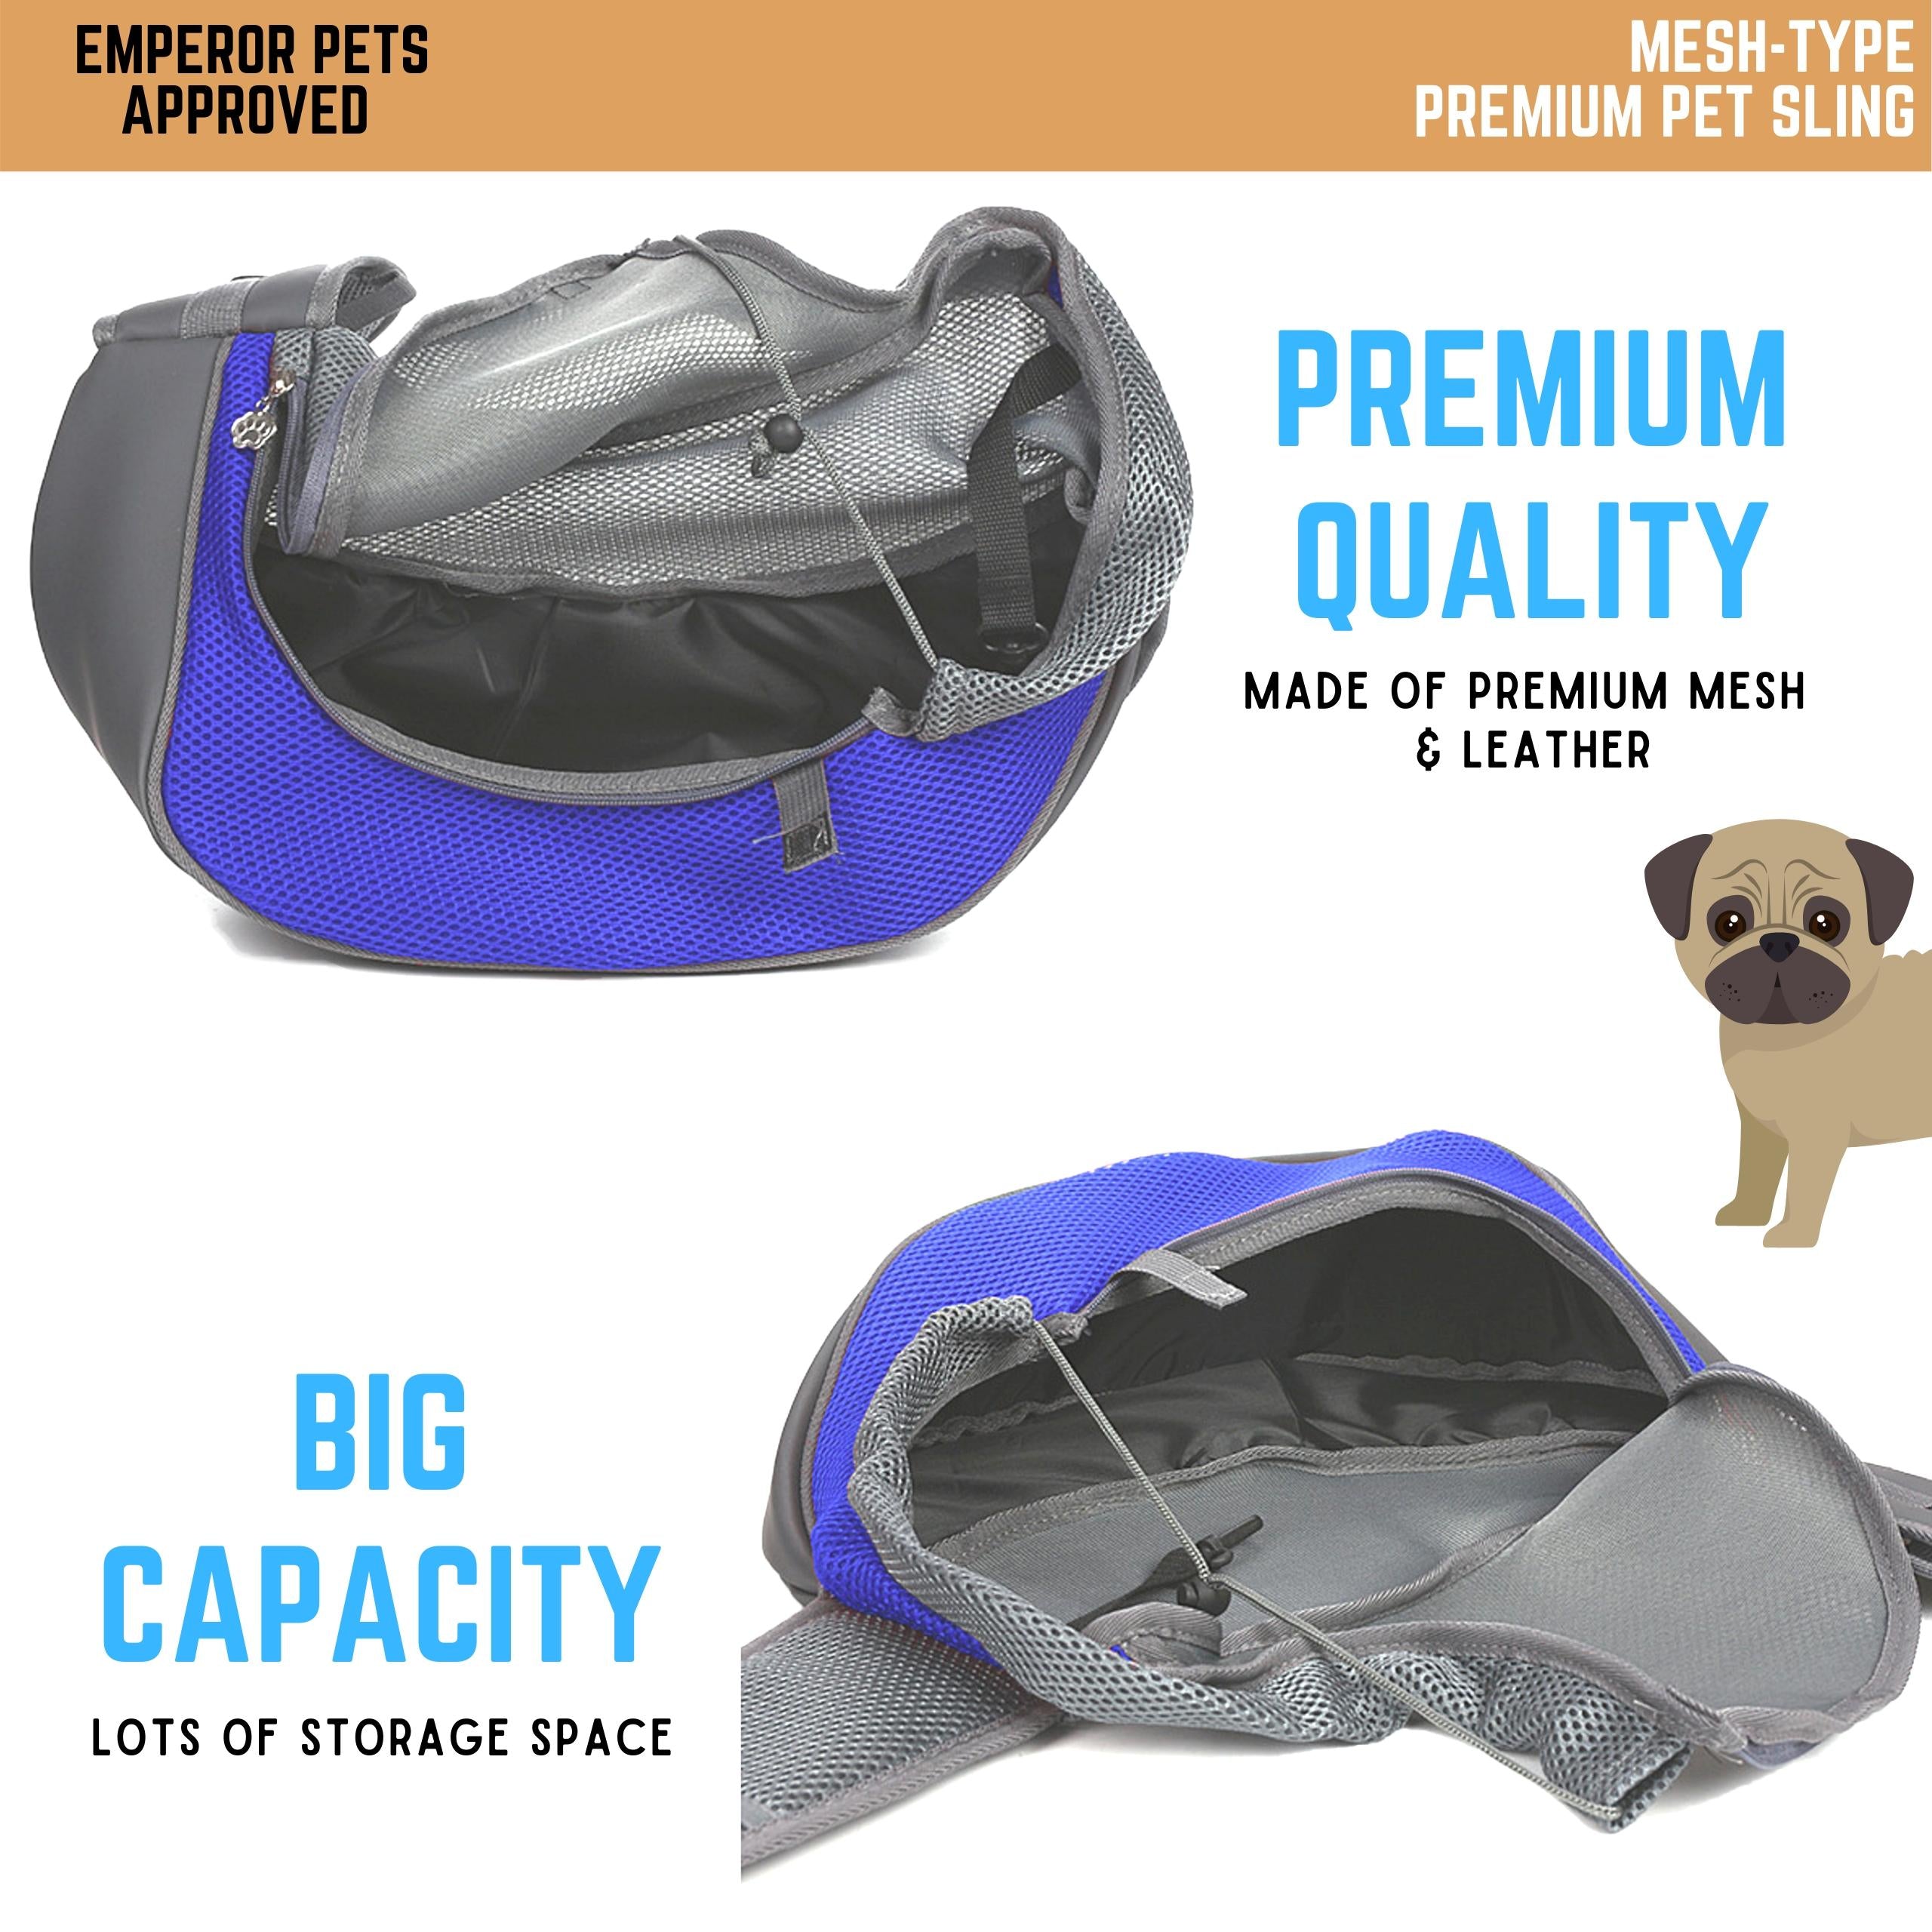 Emperor Pets Pet Sling Carrier Mesh Type, Dog Carrier, Pet Carrier, Blue Color - Image 2 Highlight